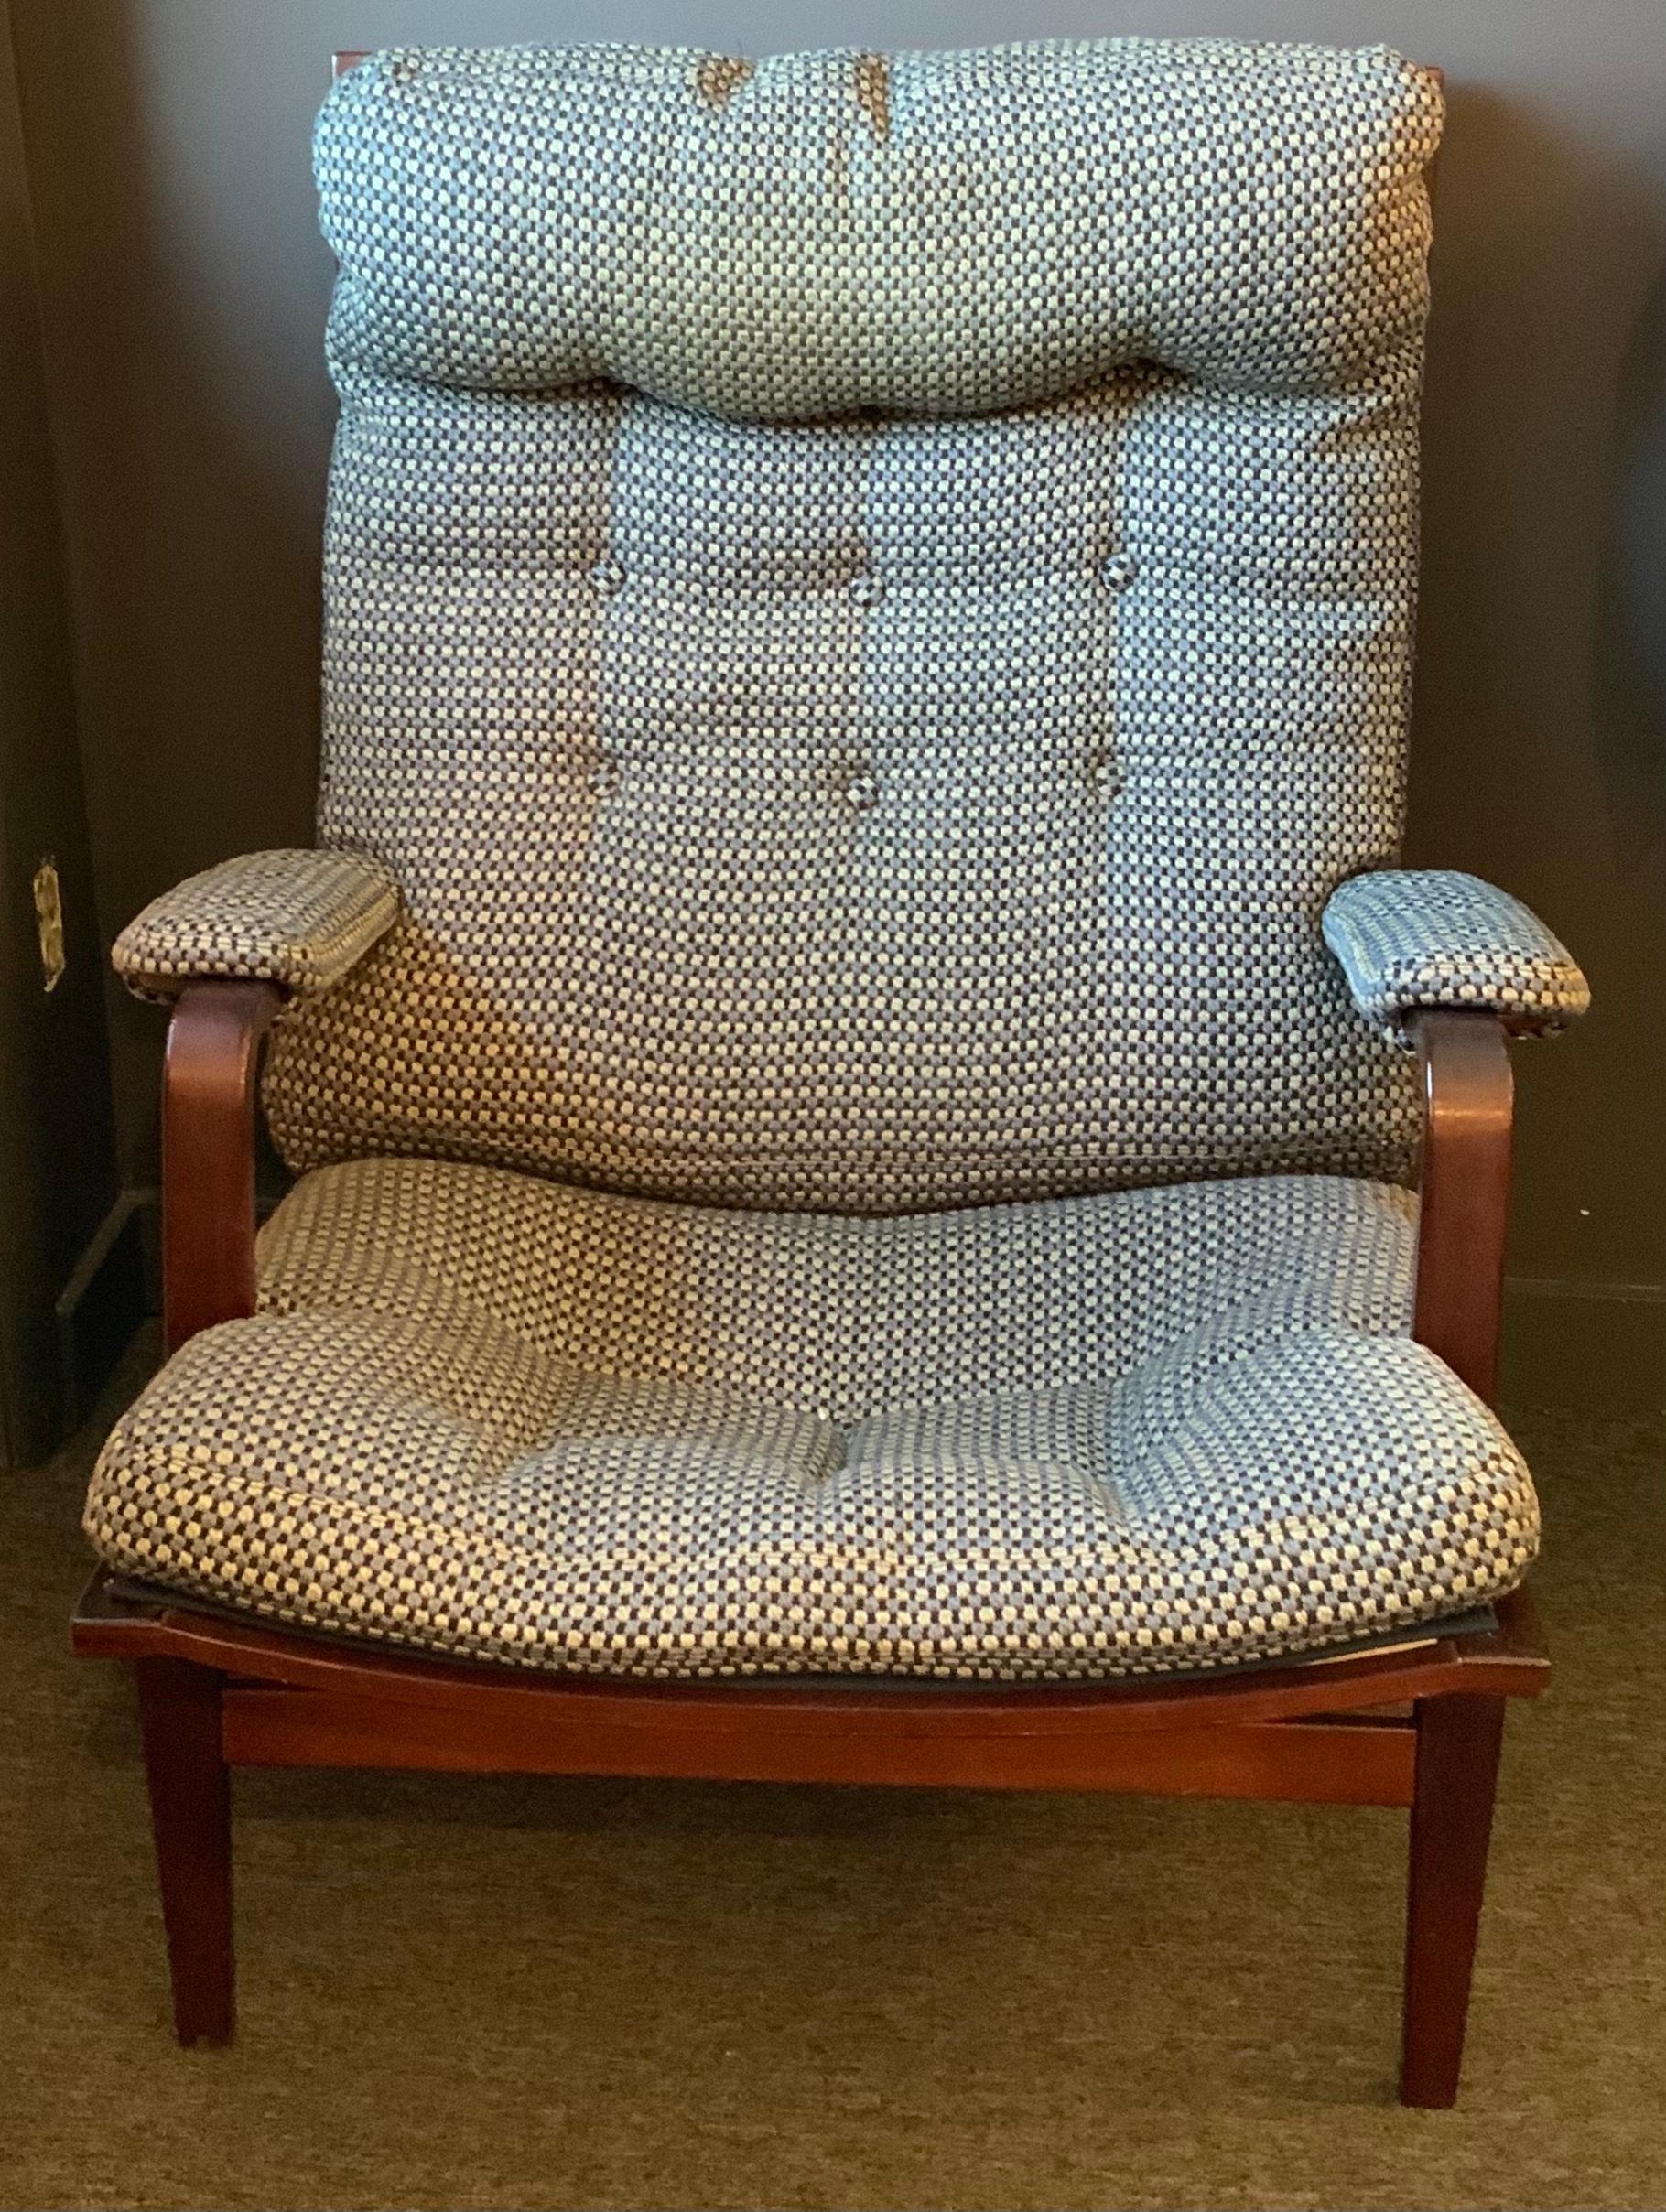 bruno mathsson lounge chair